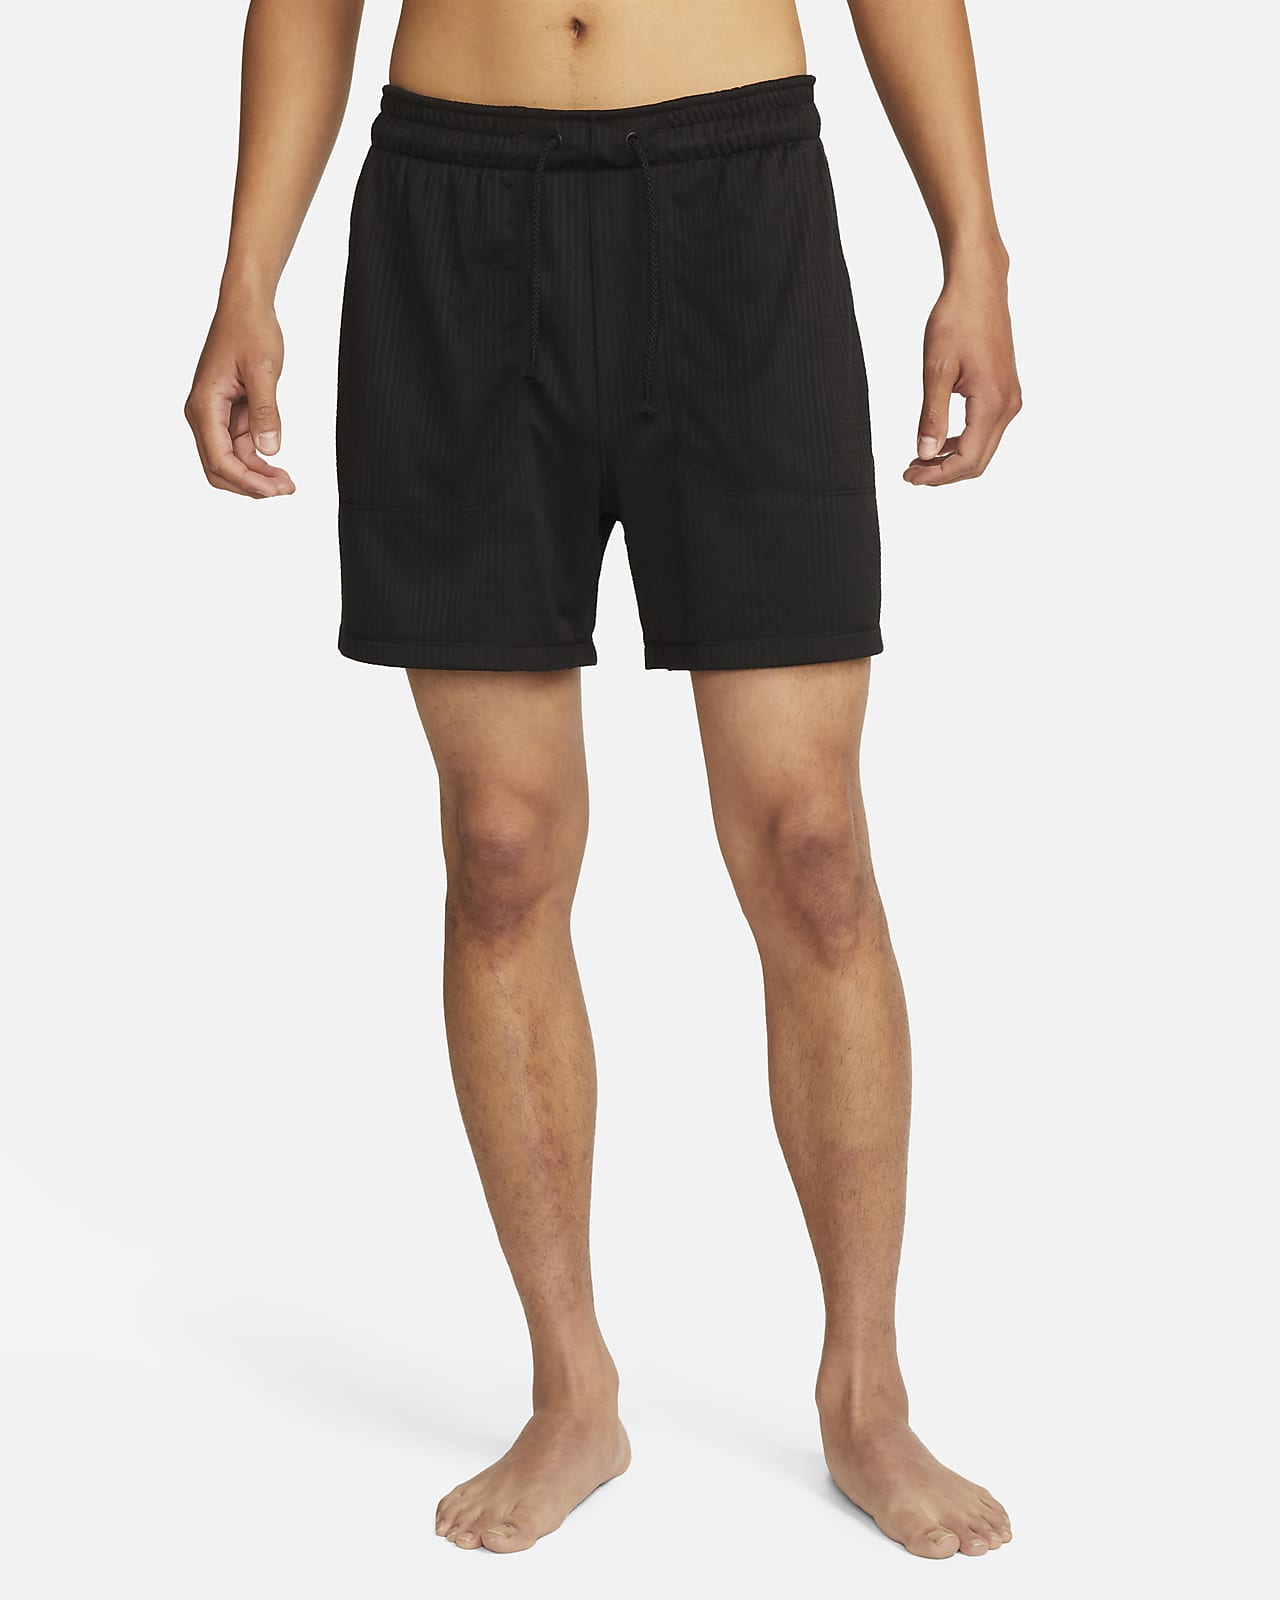 Nike Yoga Pantalón corto Dri-FIT de 13 cm sin forro - Hombre